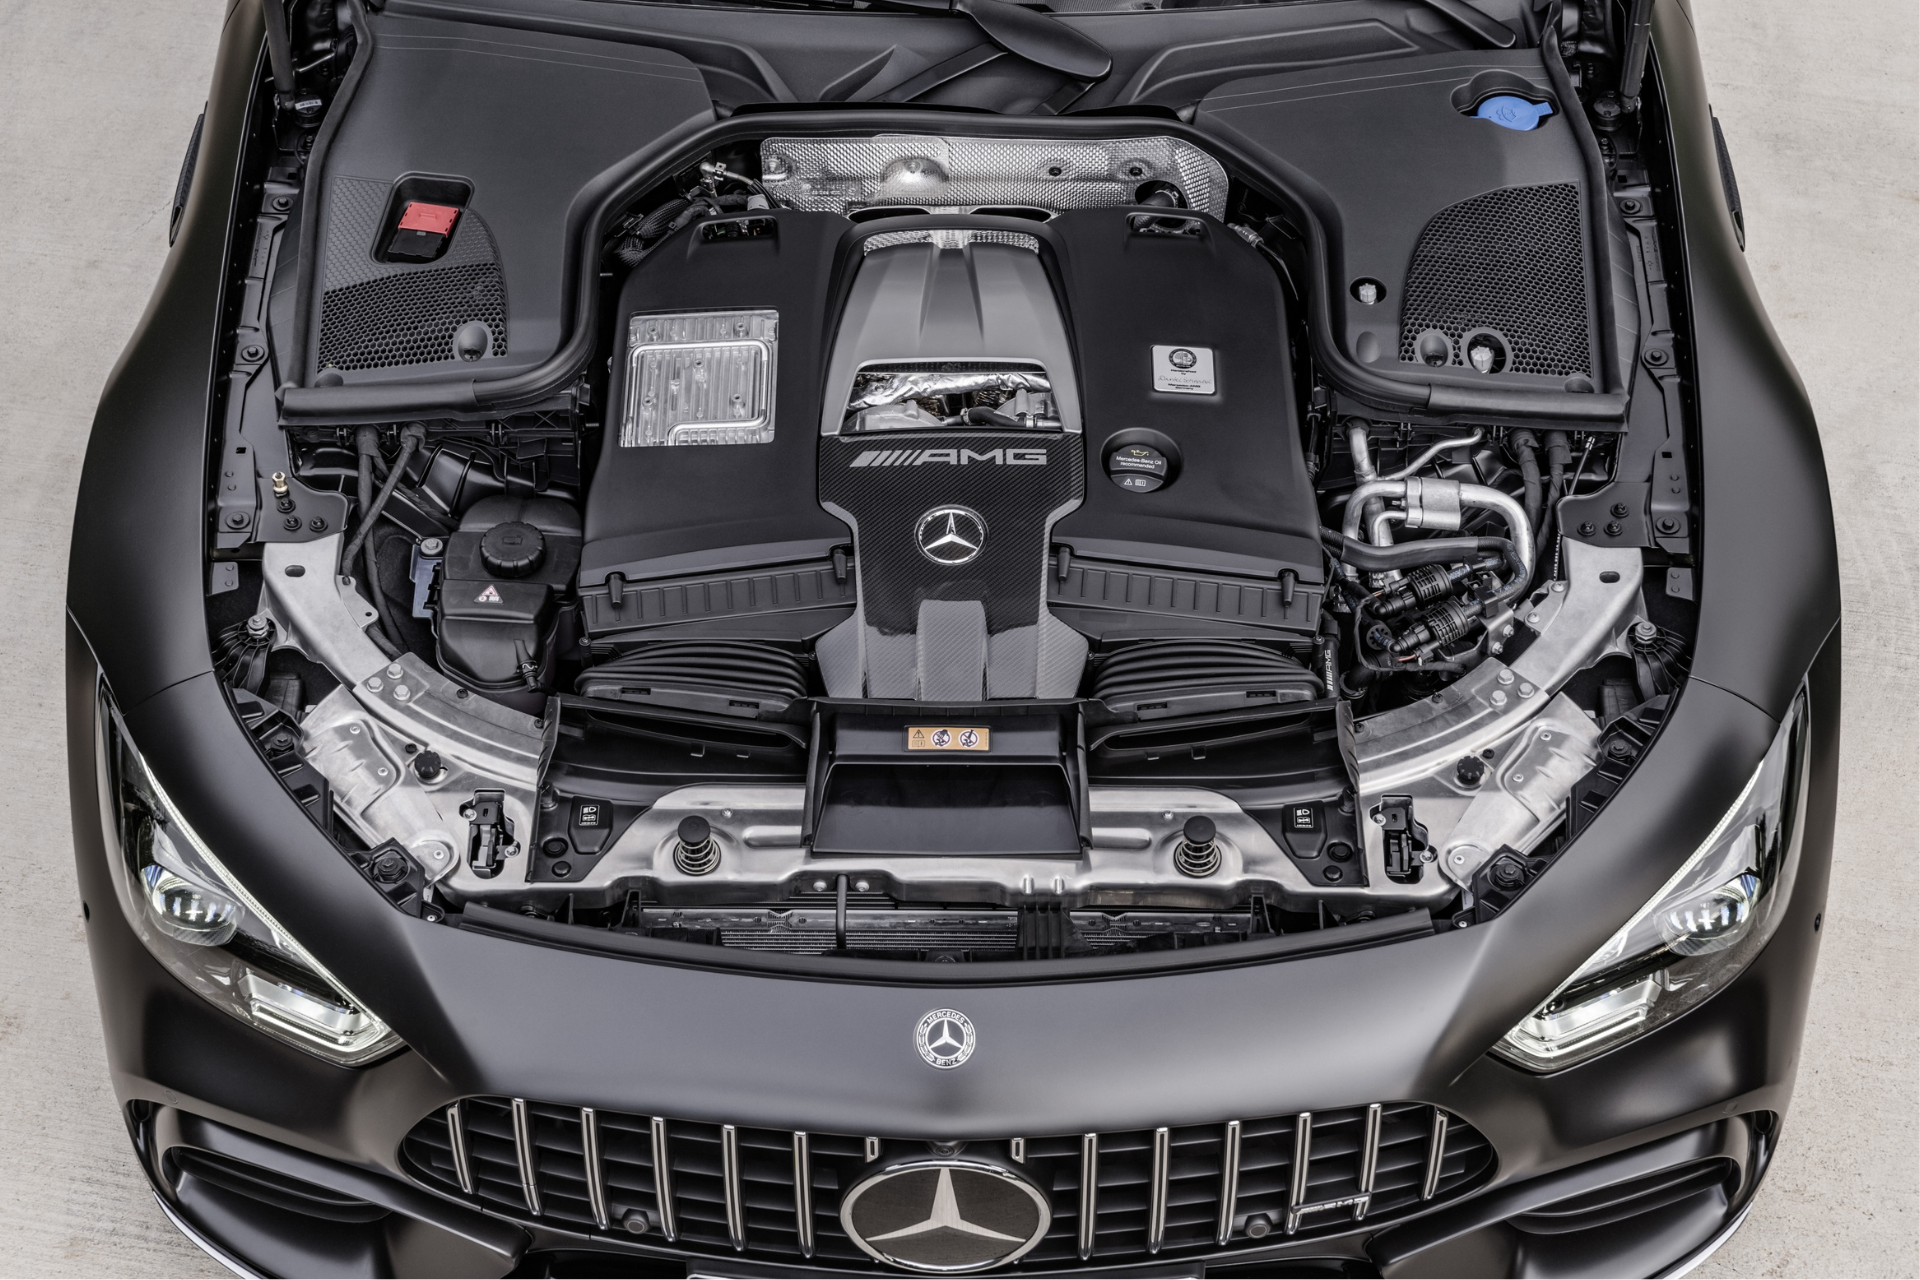 Đánh giá động cơ Mercedes - vấn đề, ưu điểm và nhược điểm